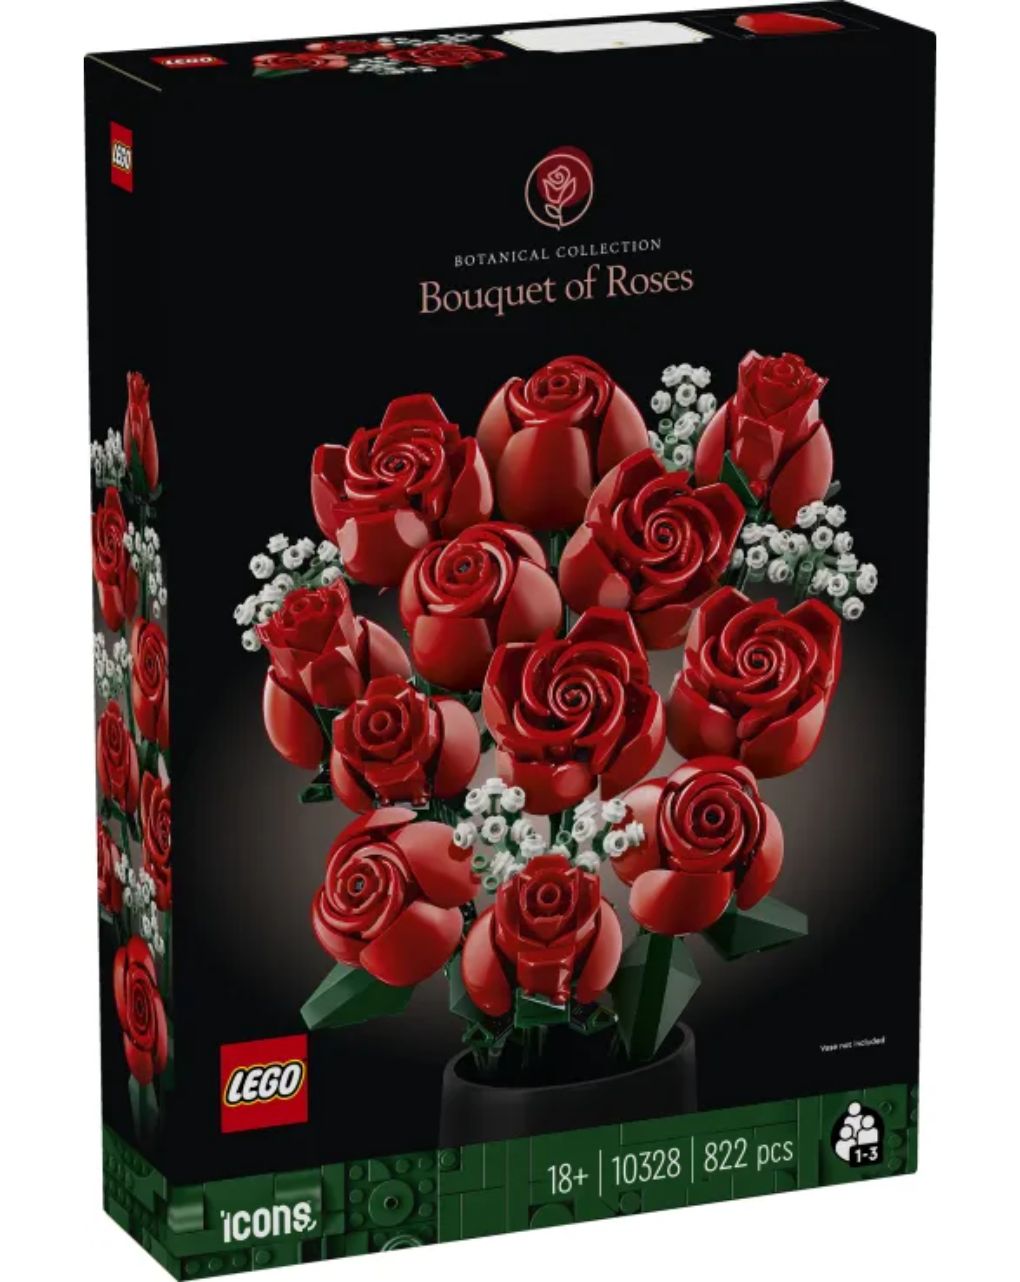 Lego icons botanical bouquet of roses 10328